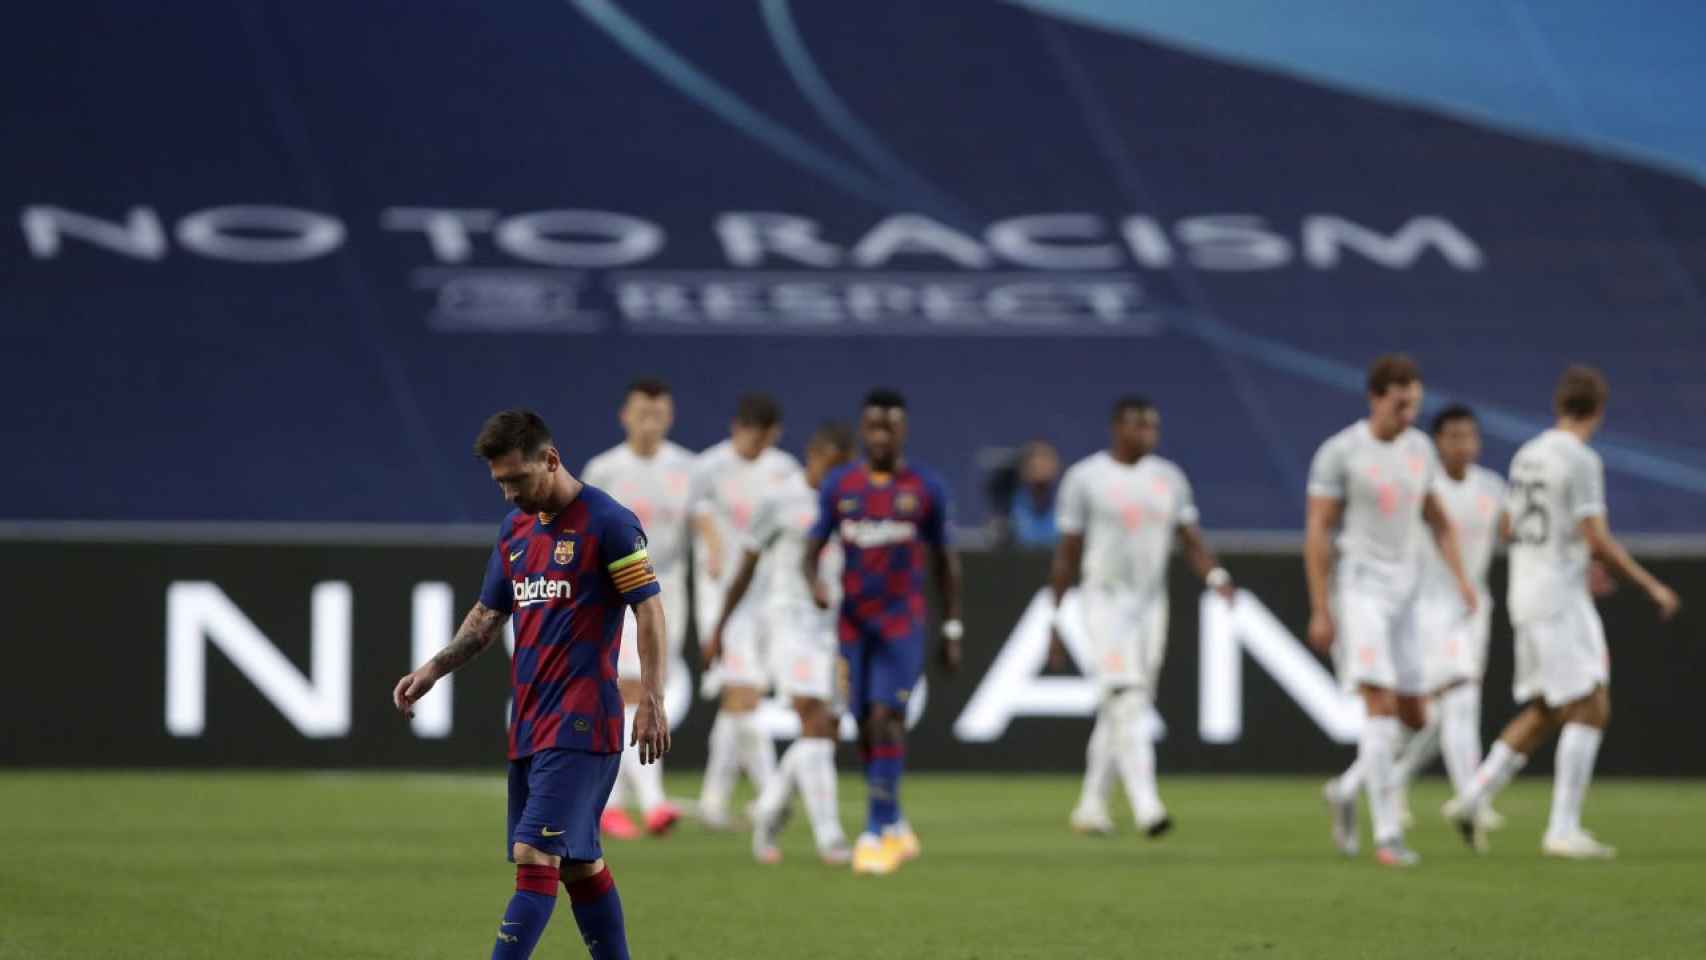 Leo Messi en una imagen contra la Champions / EFE